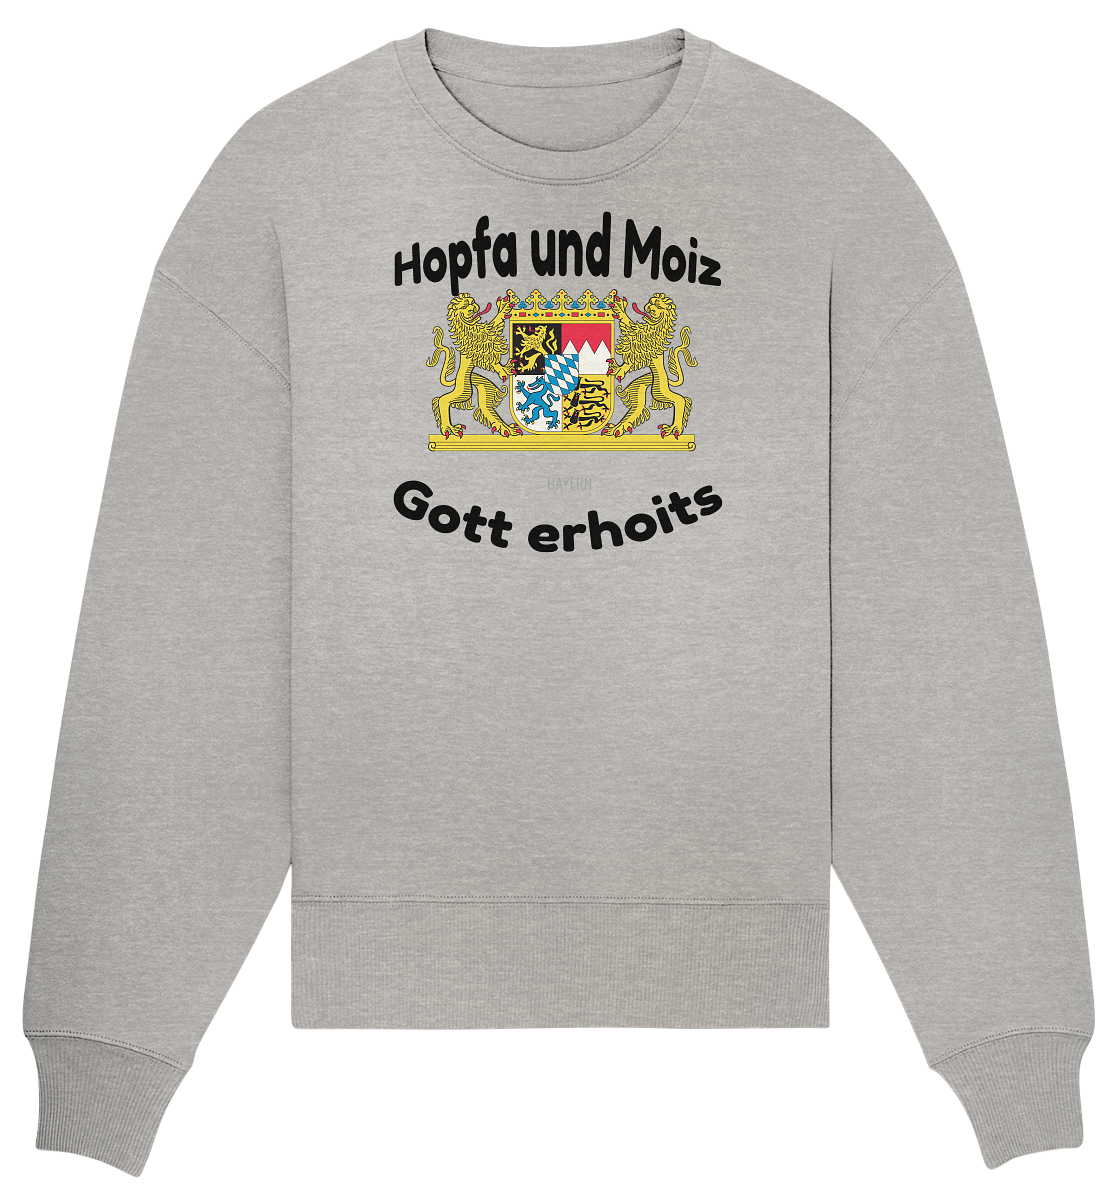 Hopfa und Moiz Gott erhoits  - Organic Oversize Sweatshirt